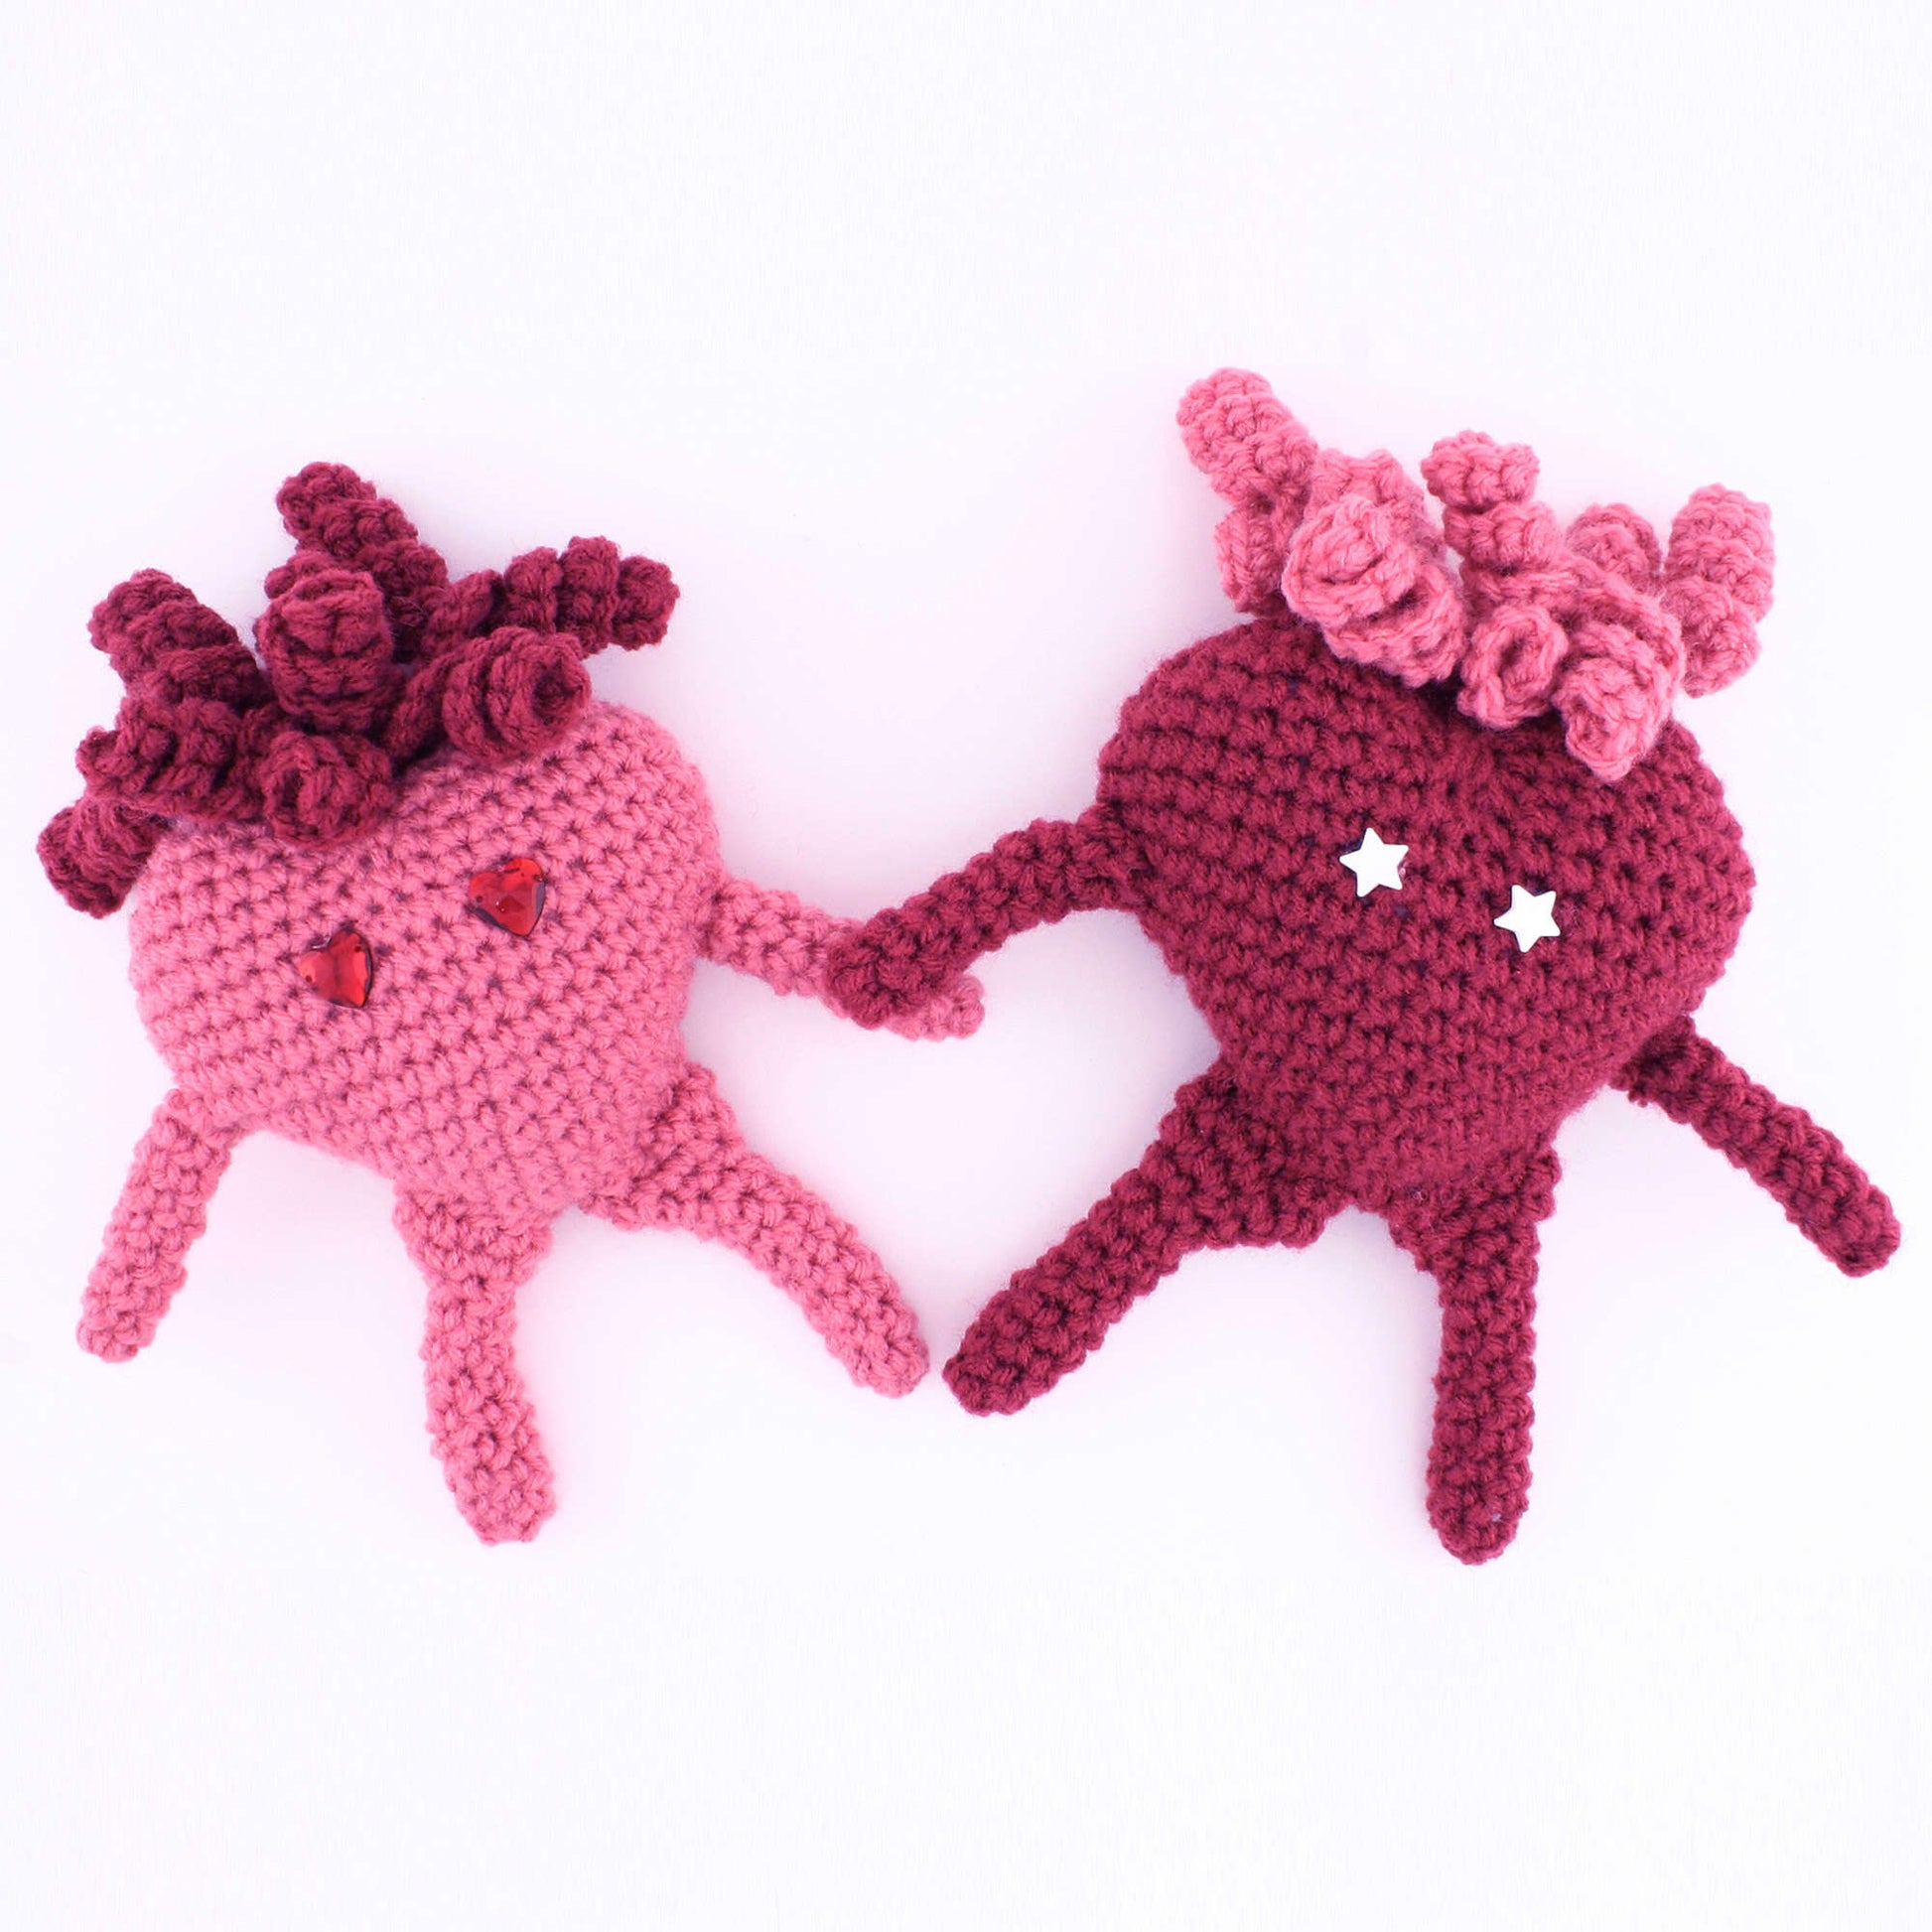 Free Red Heart Amigurumi Heart Crochet Pattern